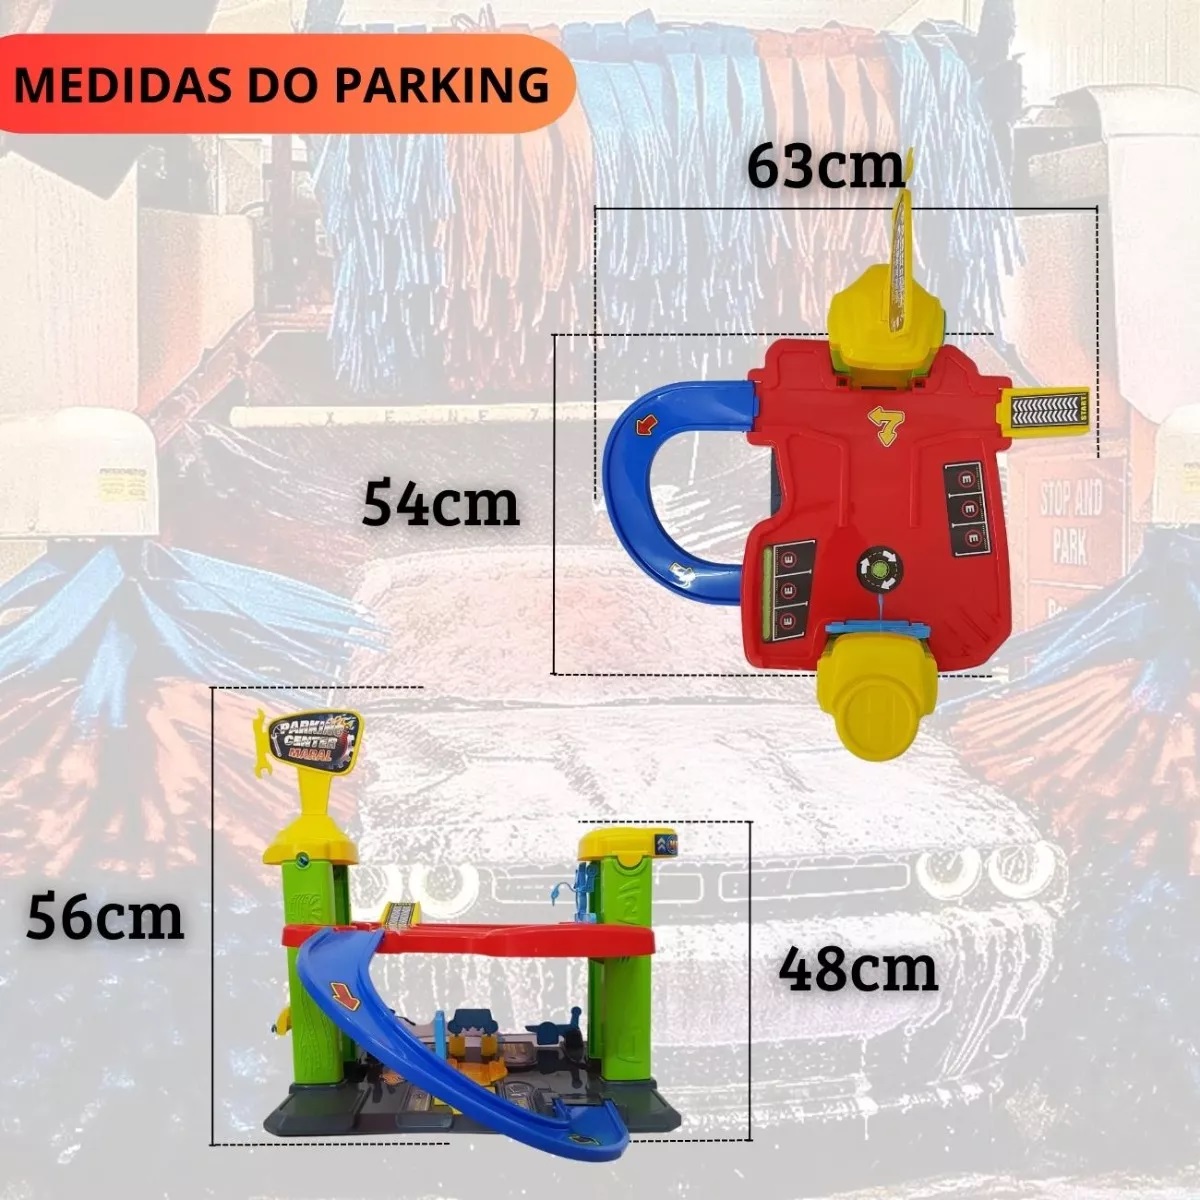 Pista Mega Parking Center – Maral – 3 Níveis – Maior Loja de Brinquedos da  Região